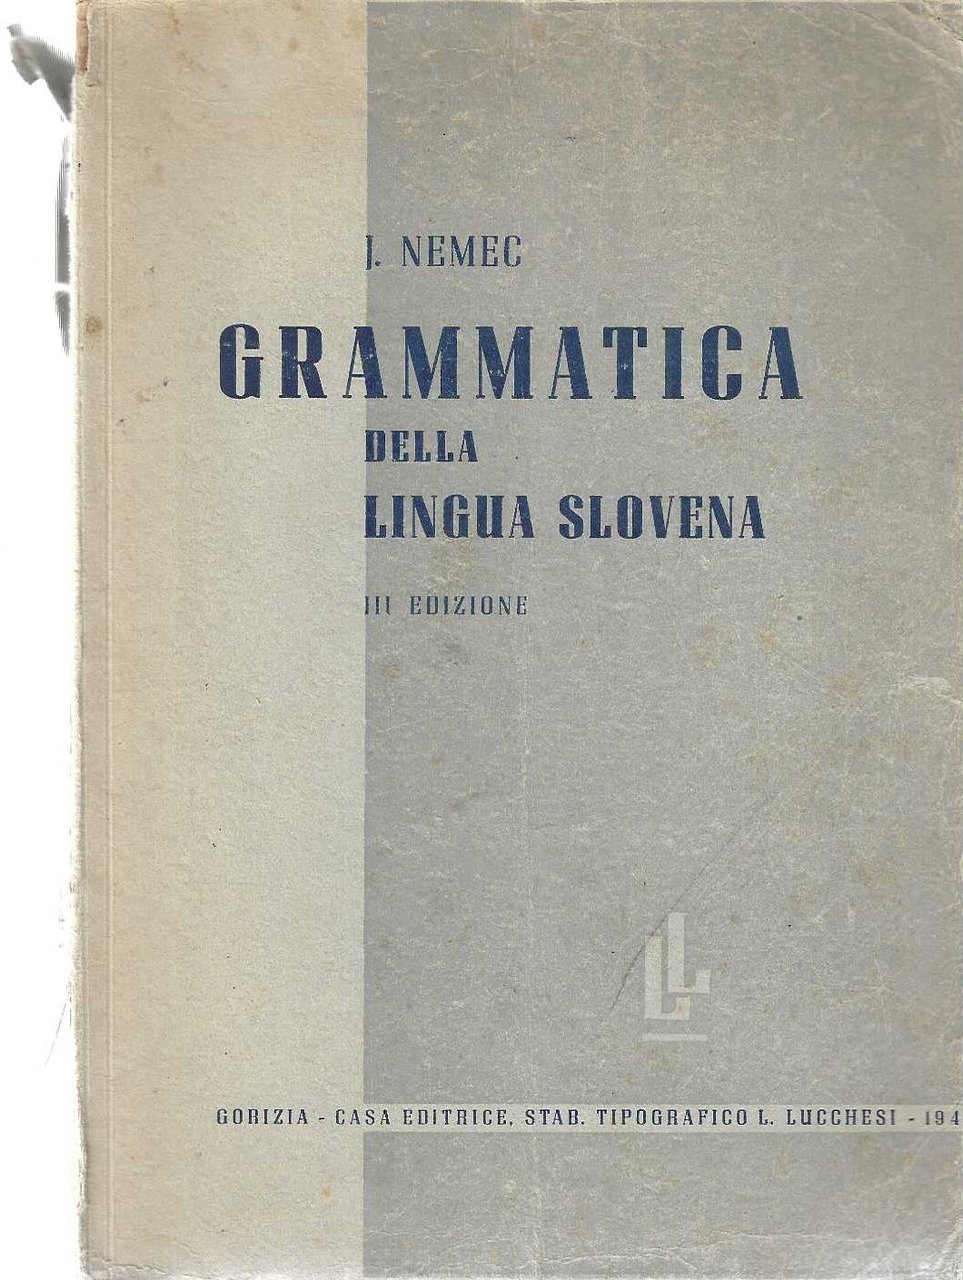 "Grammatica della lingua slovena"